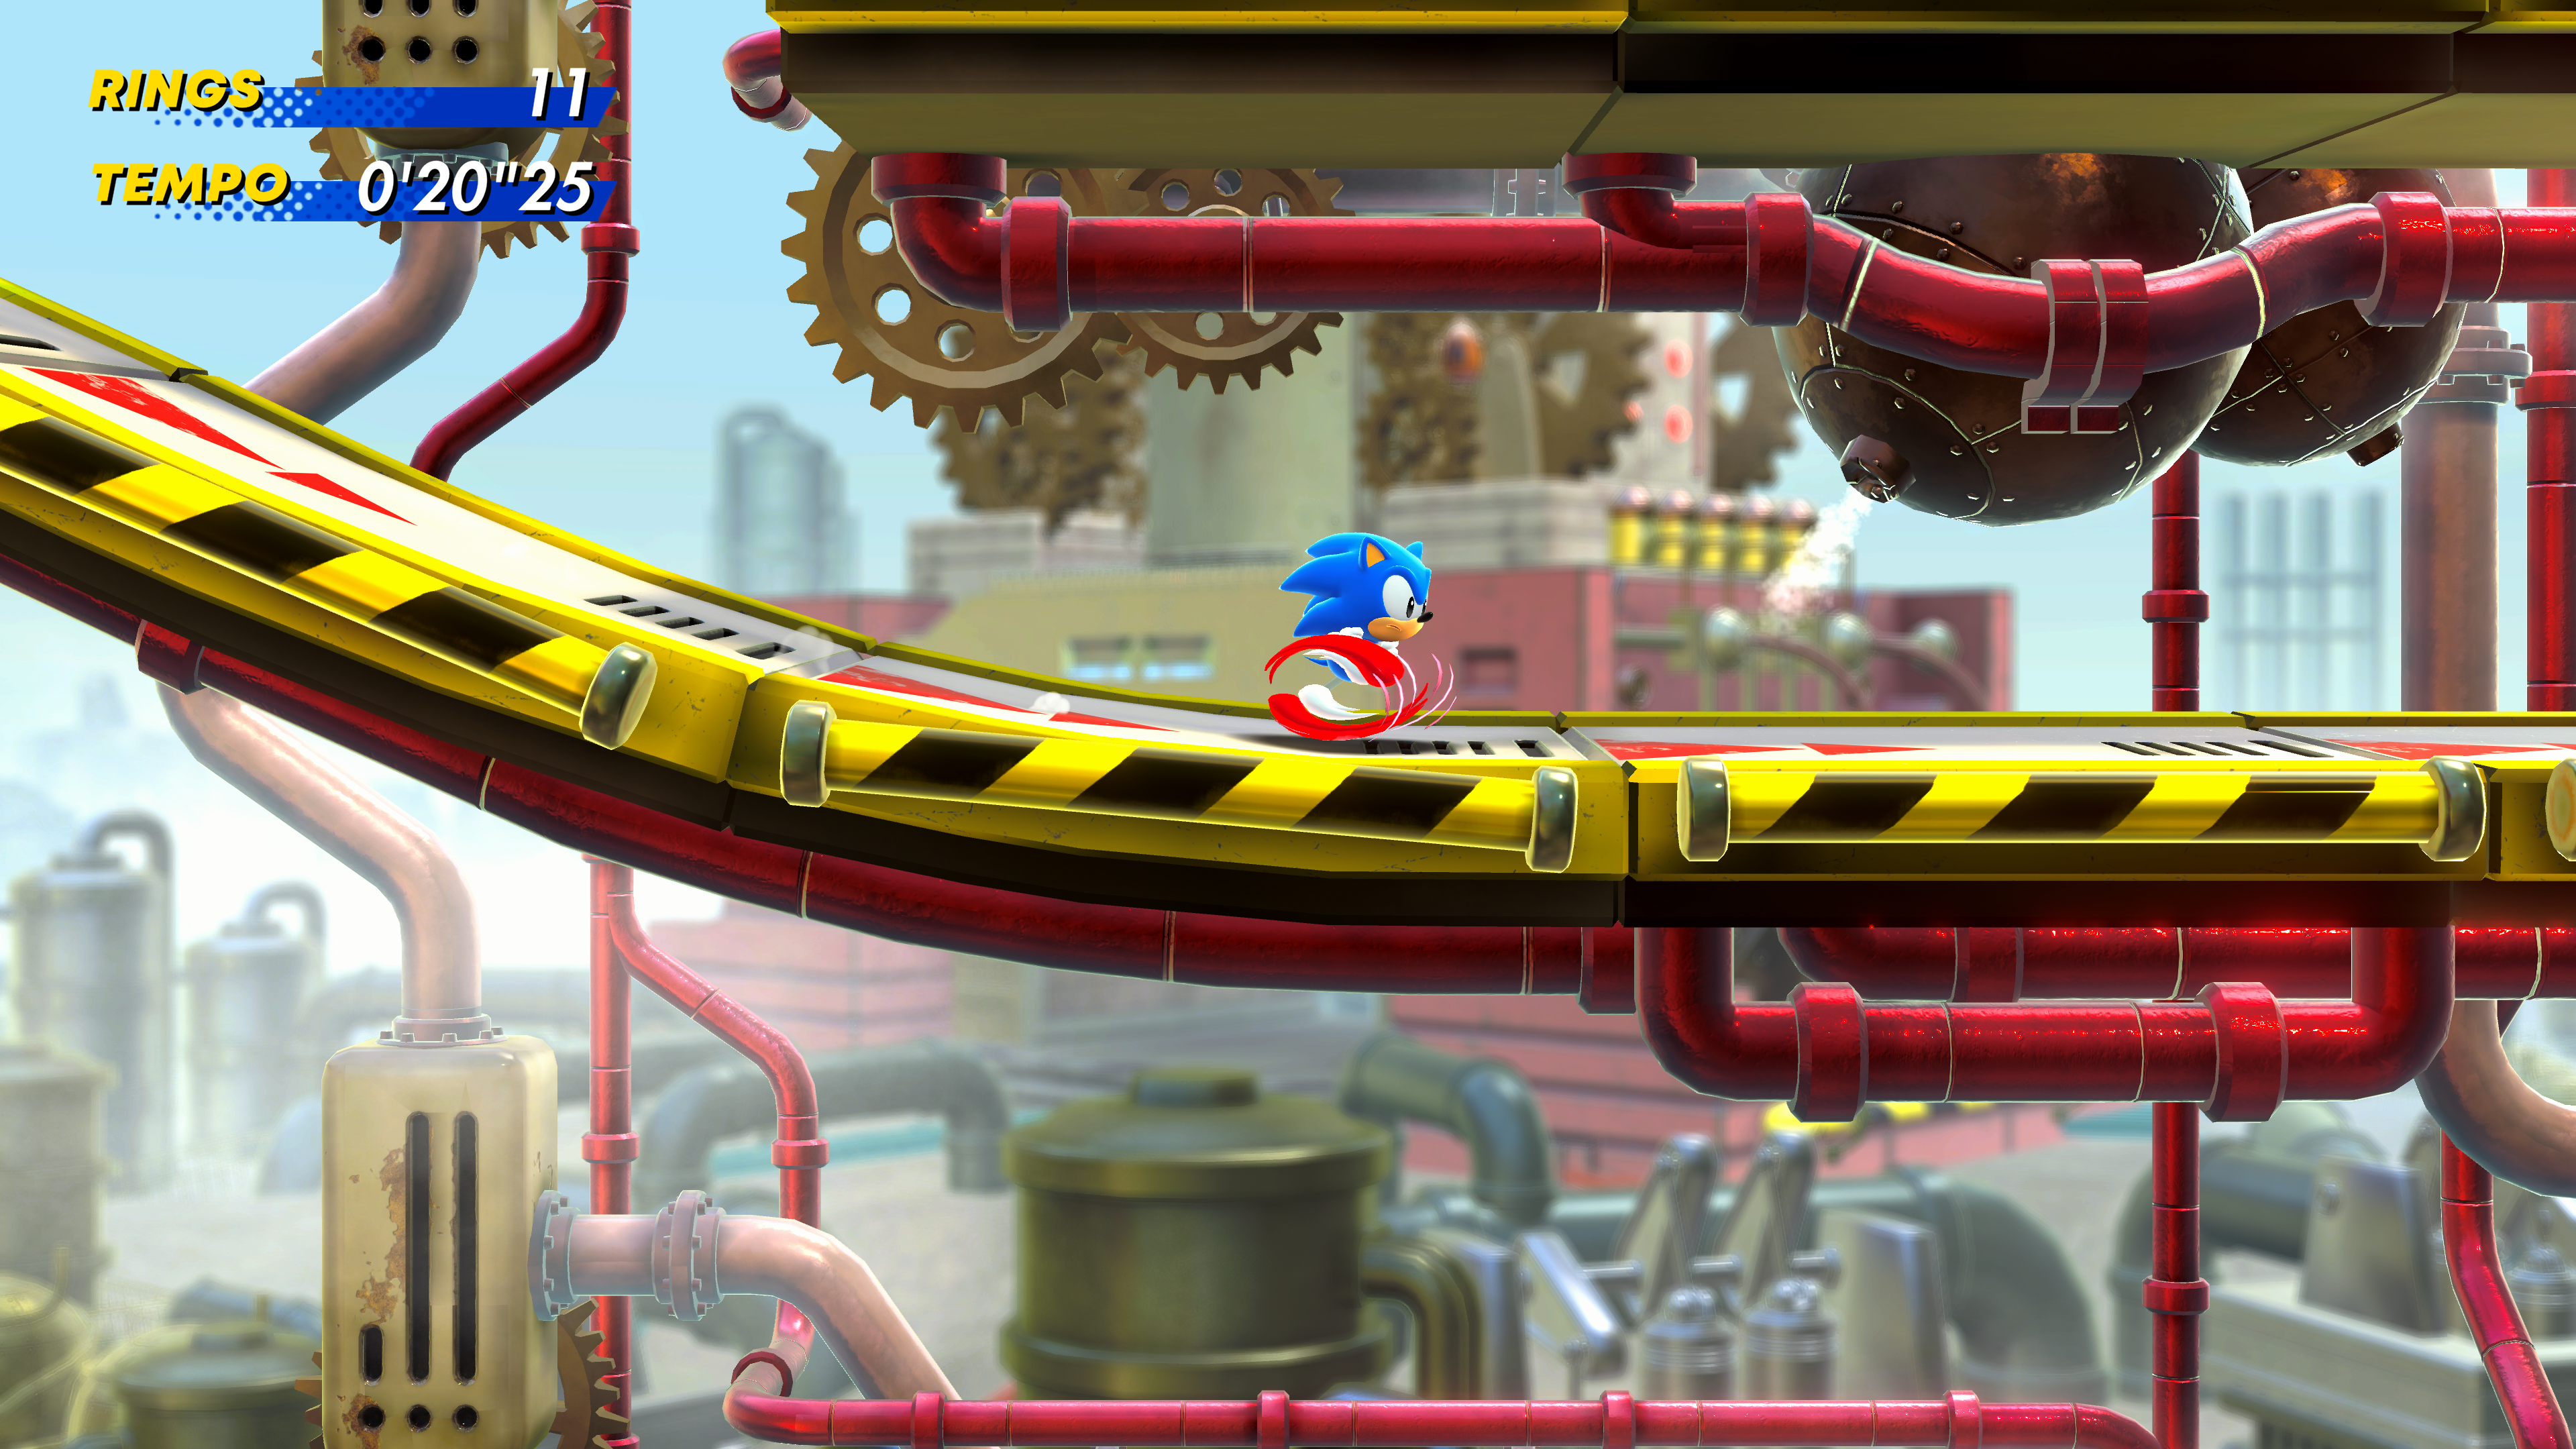 SEGA Inova com Lançamento de Série de Vídeos para Sonic Superstars: Conheça  os Speed Strats!